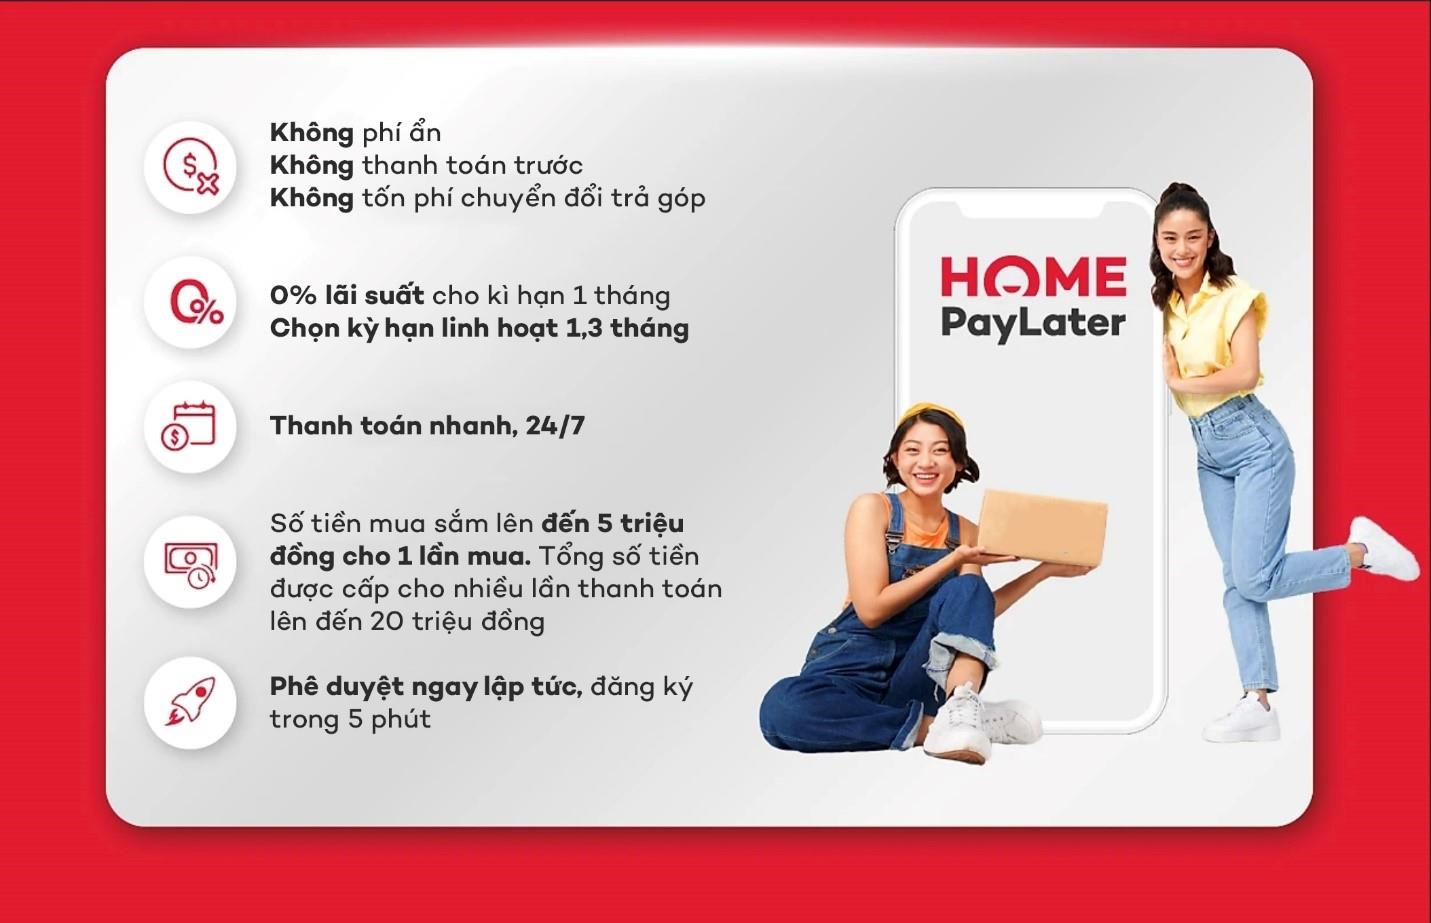 Home PayLater: Giải quyết thách thức về thanh toán online và mua sắm ưu đãi - Ảnh 3.